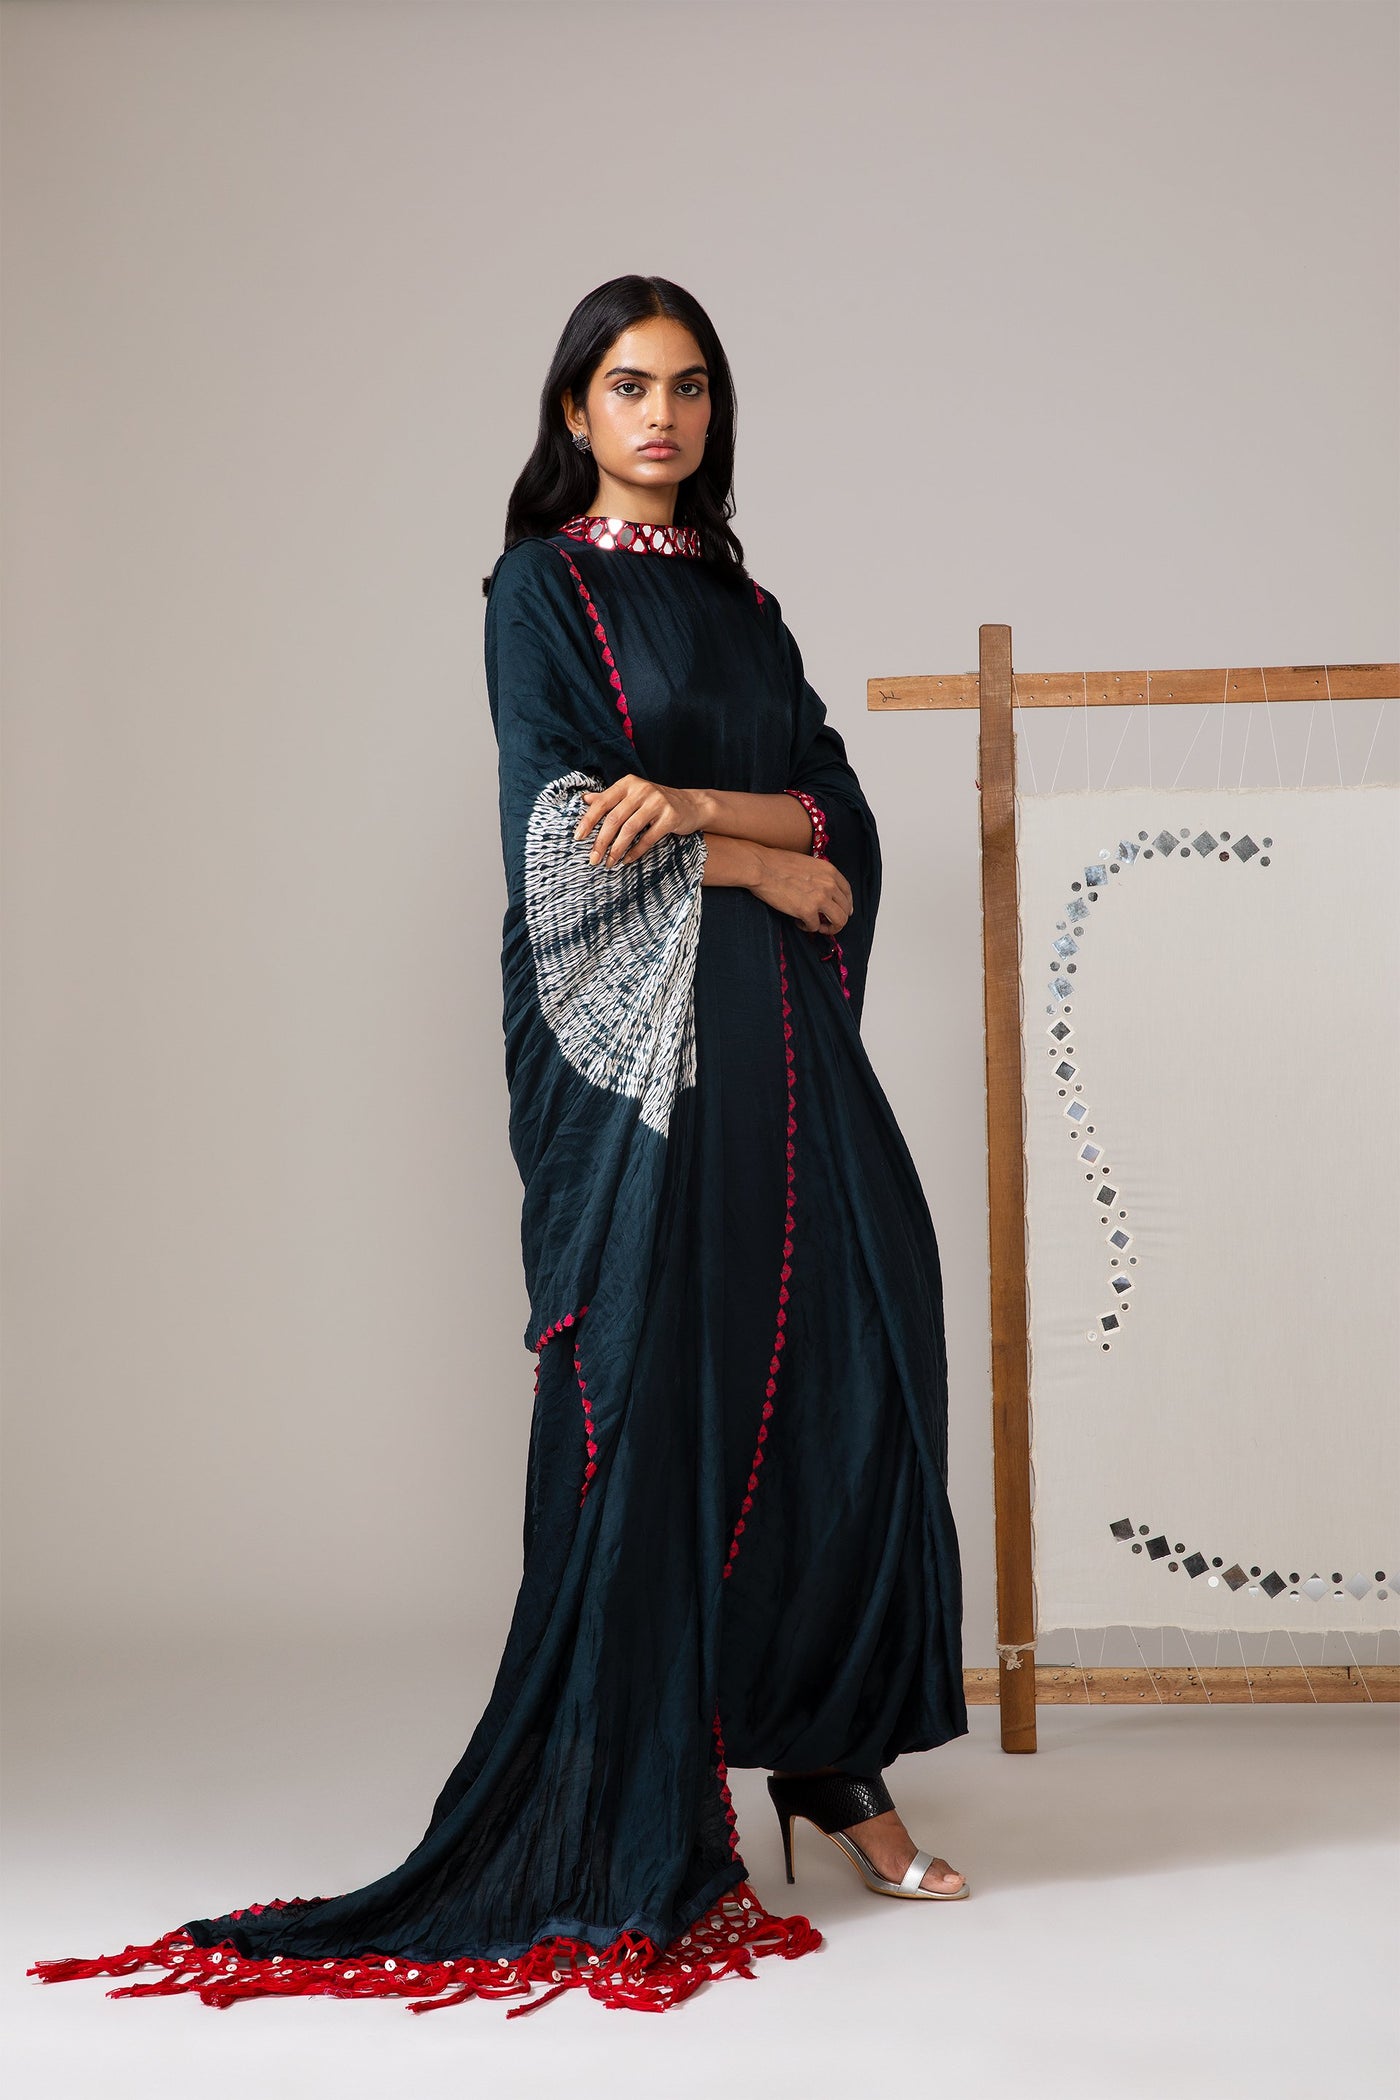 Shibori Bandhani drape with Mirrorwork Sleeves